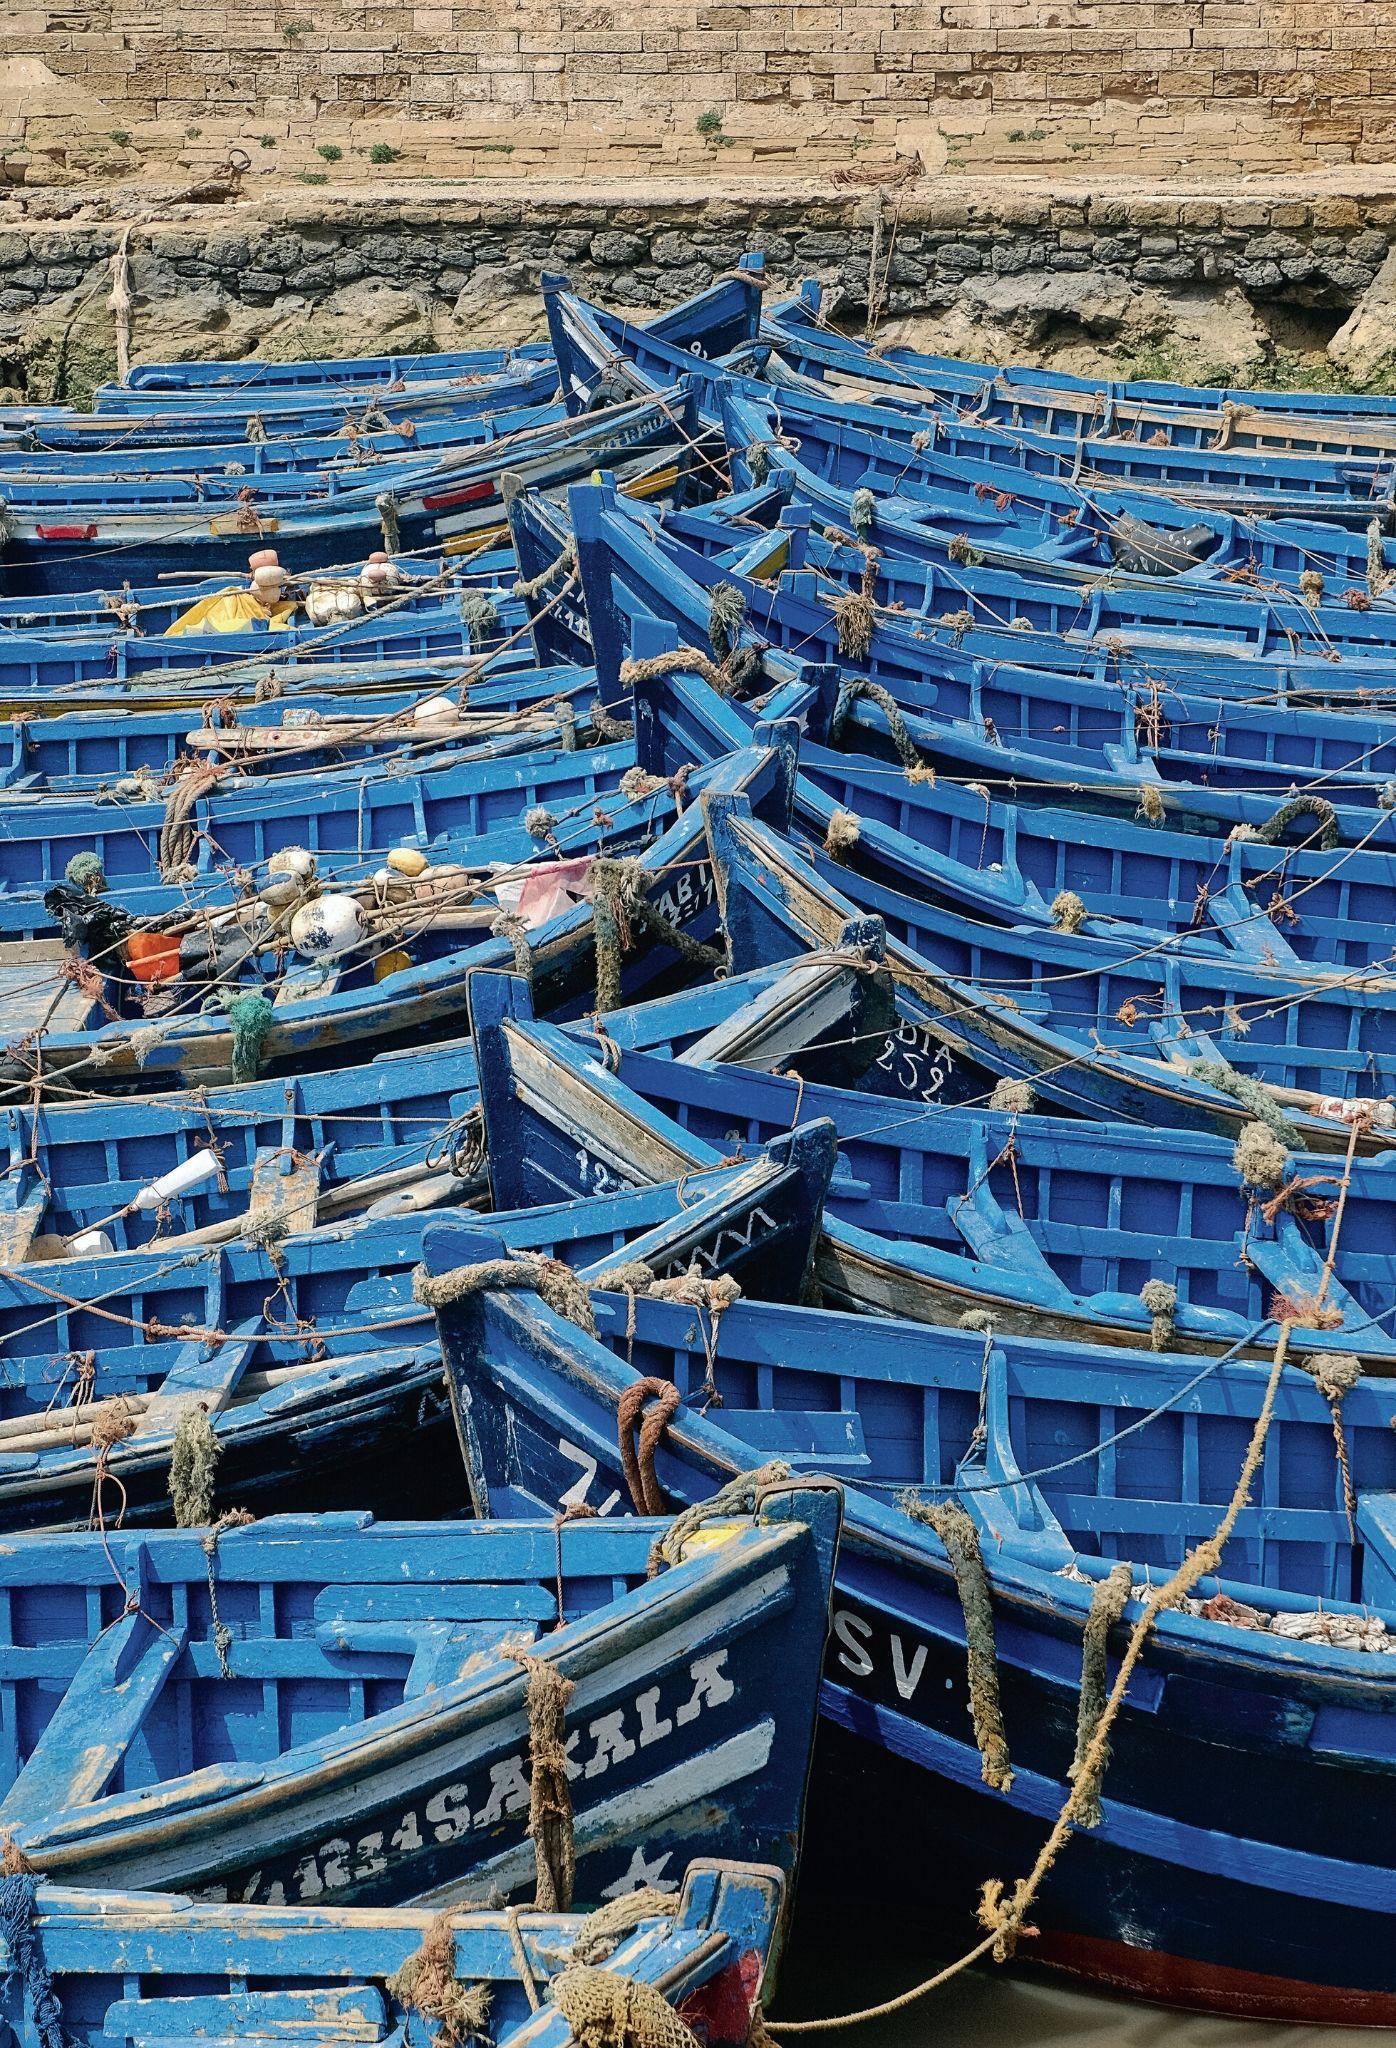  Dawniej Essaouira była największym w Maroku portem sardynkowym, a i dziś rybacy wypływają o zmierzchu na połów w charakterystycznych niebieskich łodziach. (Fot. Anna Janowska)